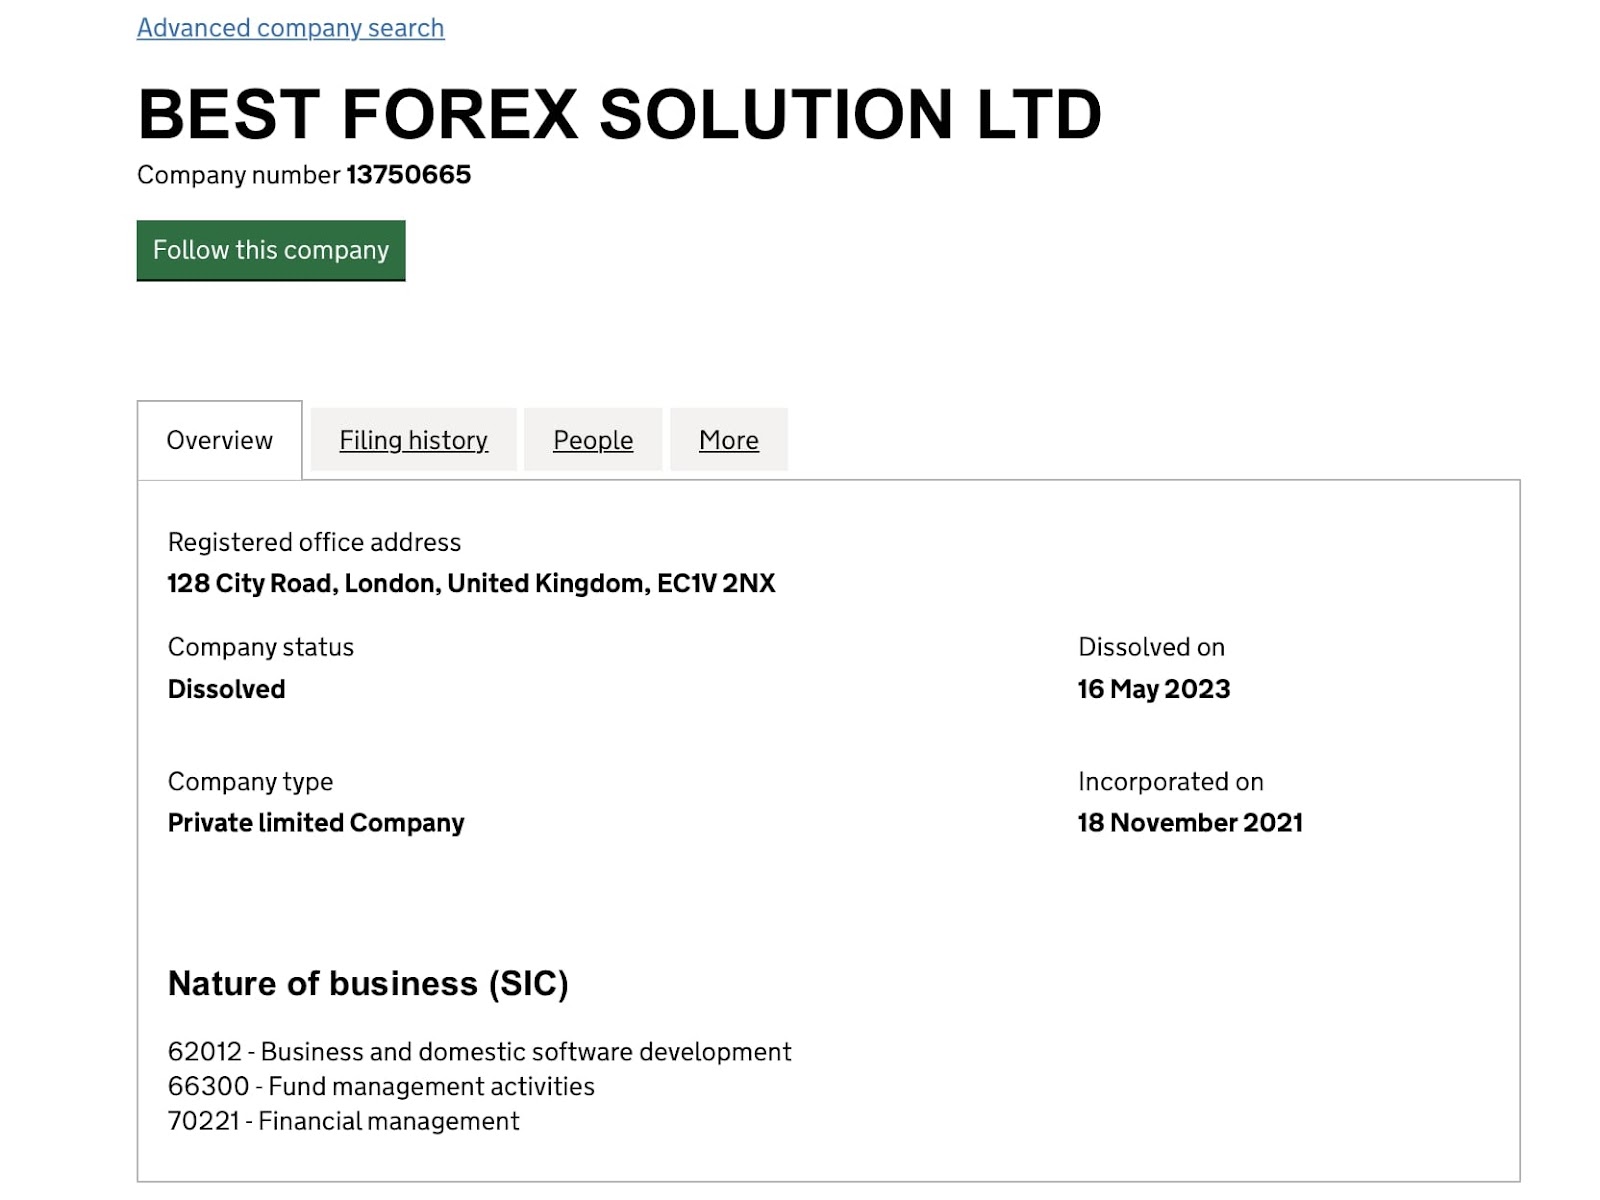 Best Forex Solution LTD: отзывы  клиентов о  компании в  2023 году